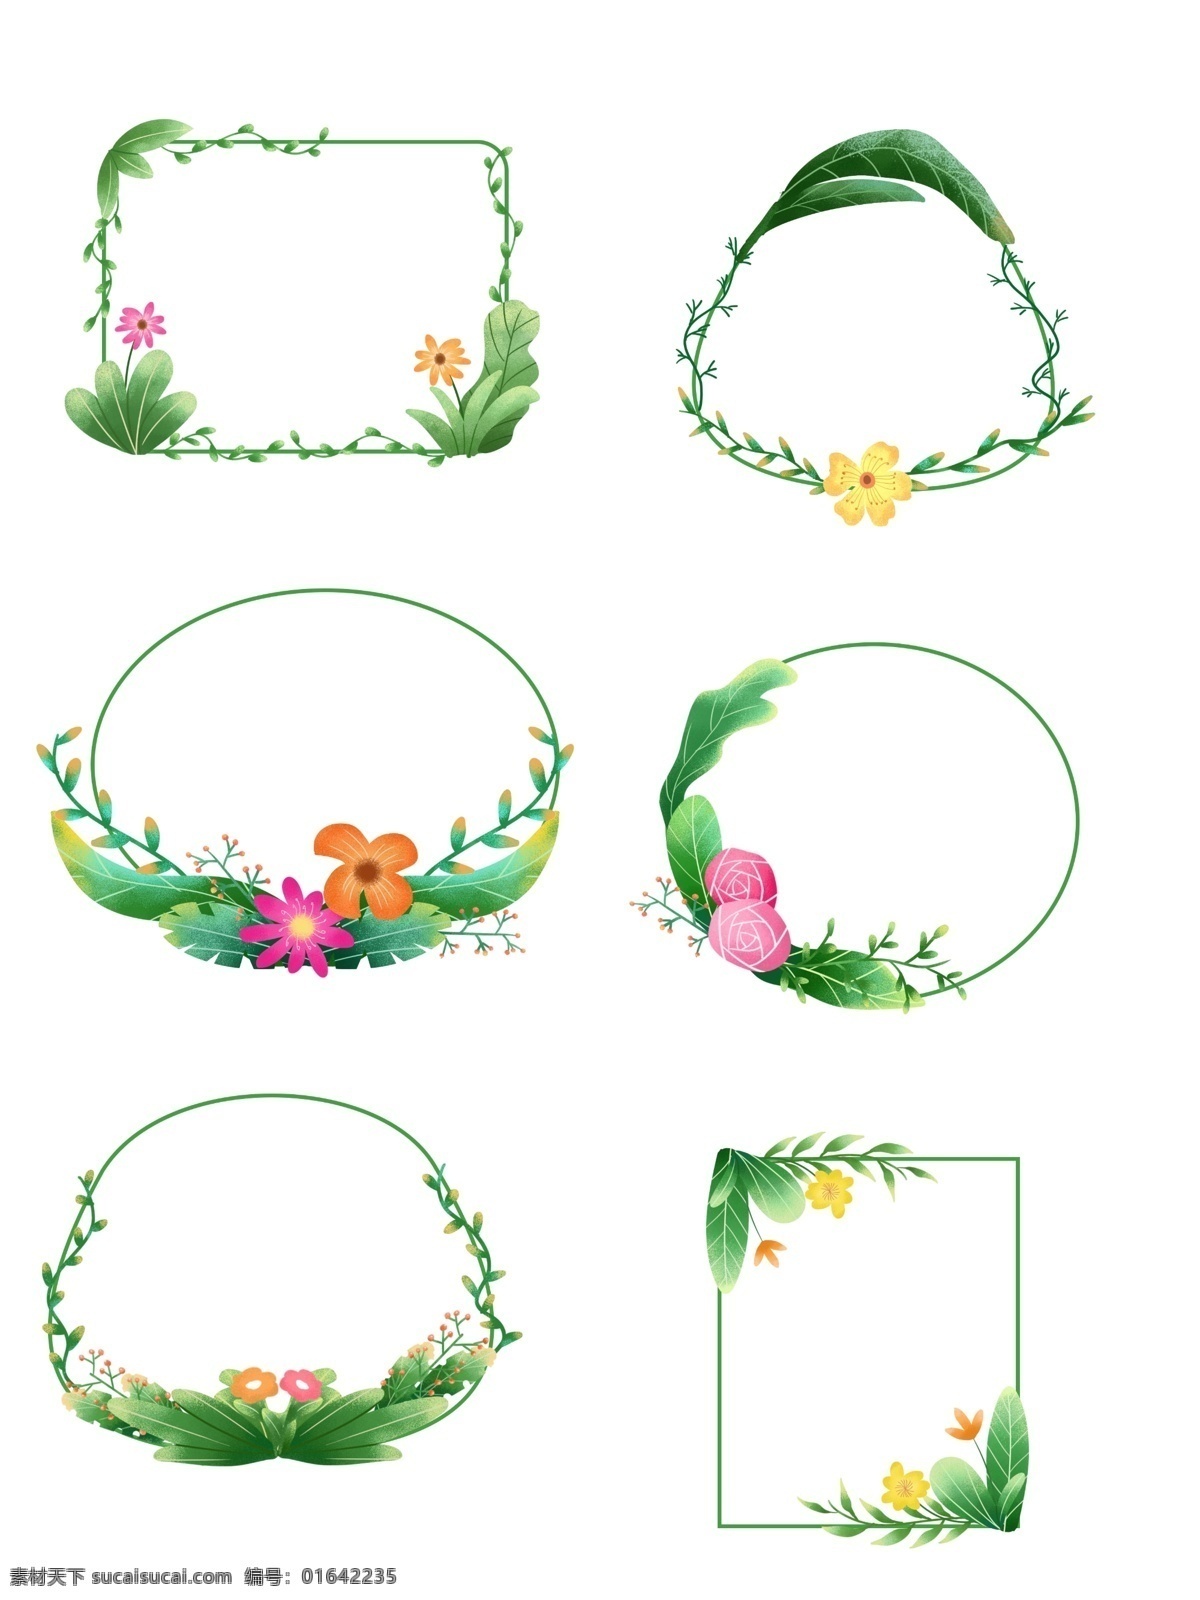 手绘 春天 绿色 清新 植物 鲜花 绿叶 边框 图案 元素 手绘鲜花 手绘植物 植物元素 鲜花元素 边框元素